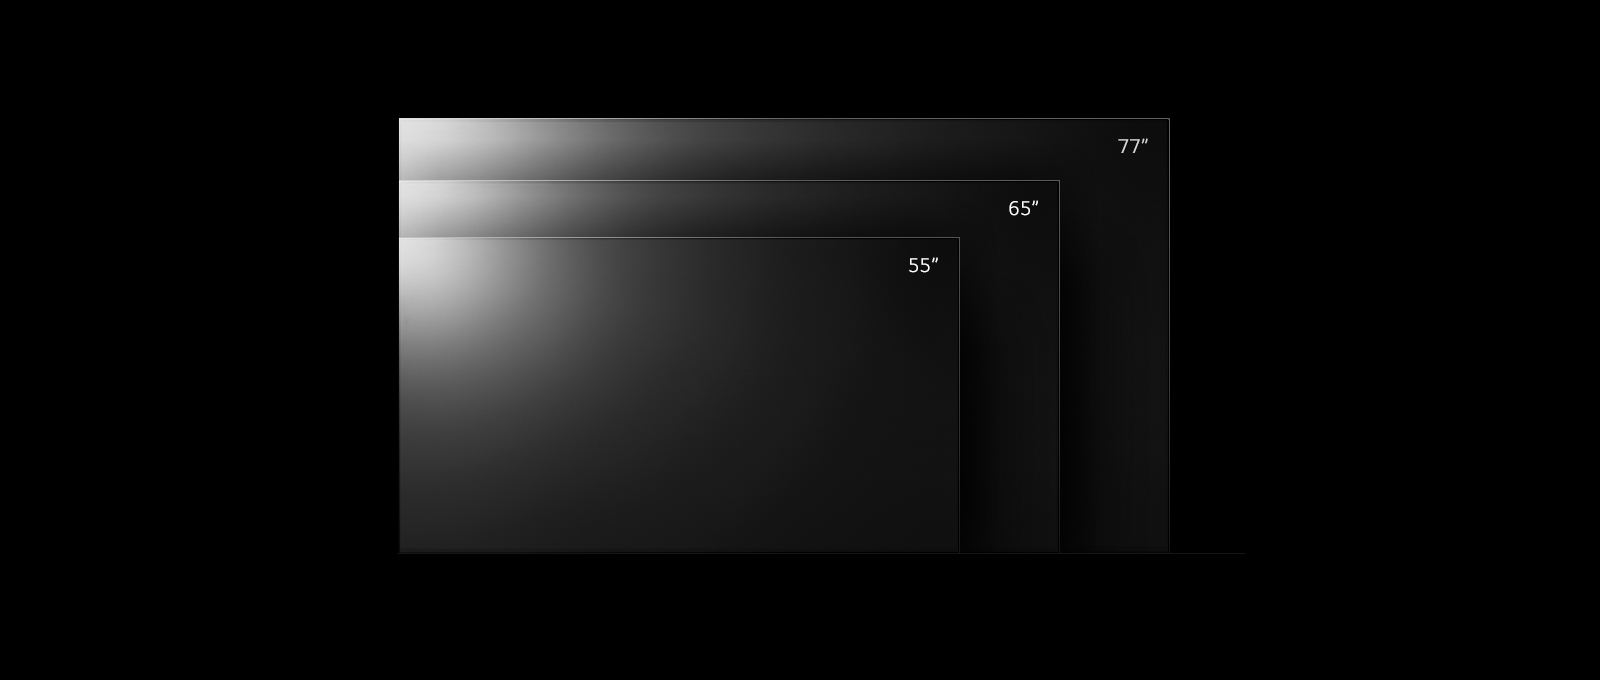 Utvalg av LG OLED G2 -TV i forskjellige størrelser, fra 55 til 83 tommer